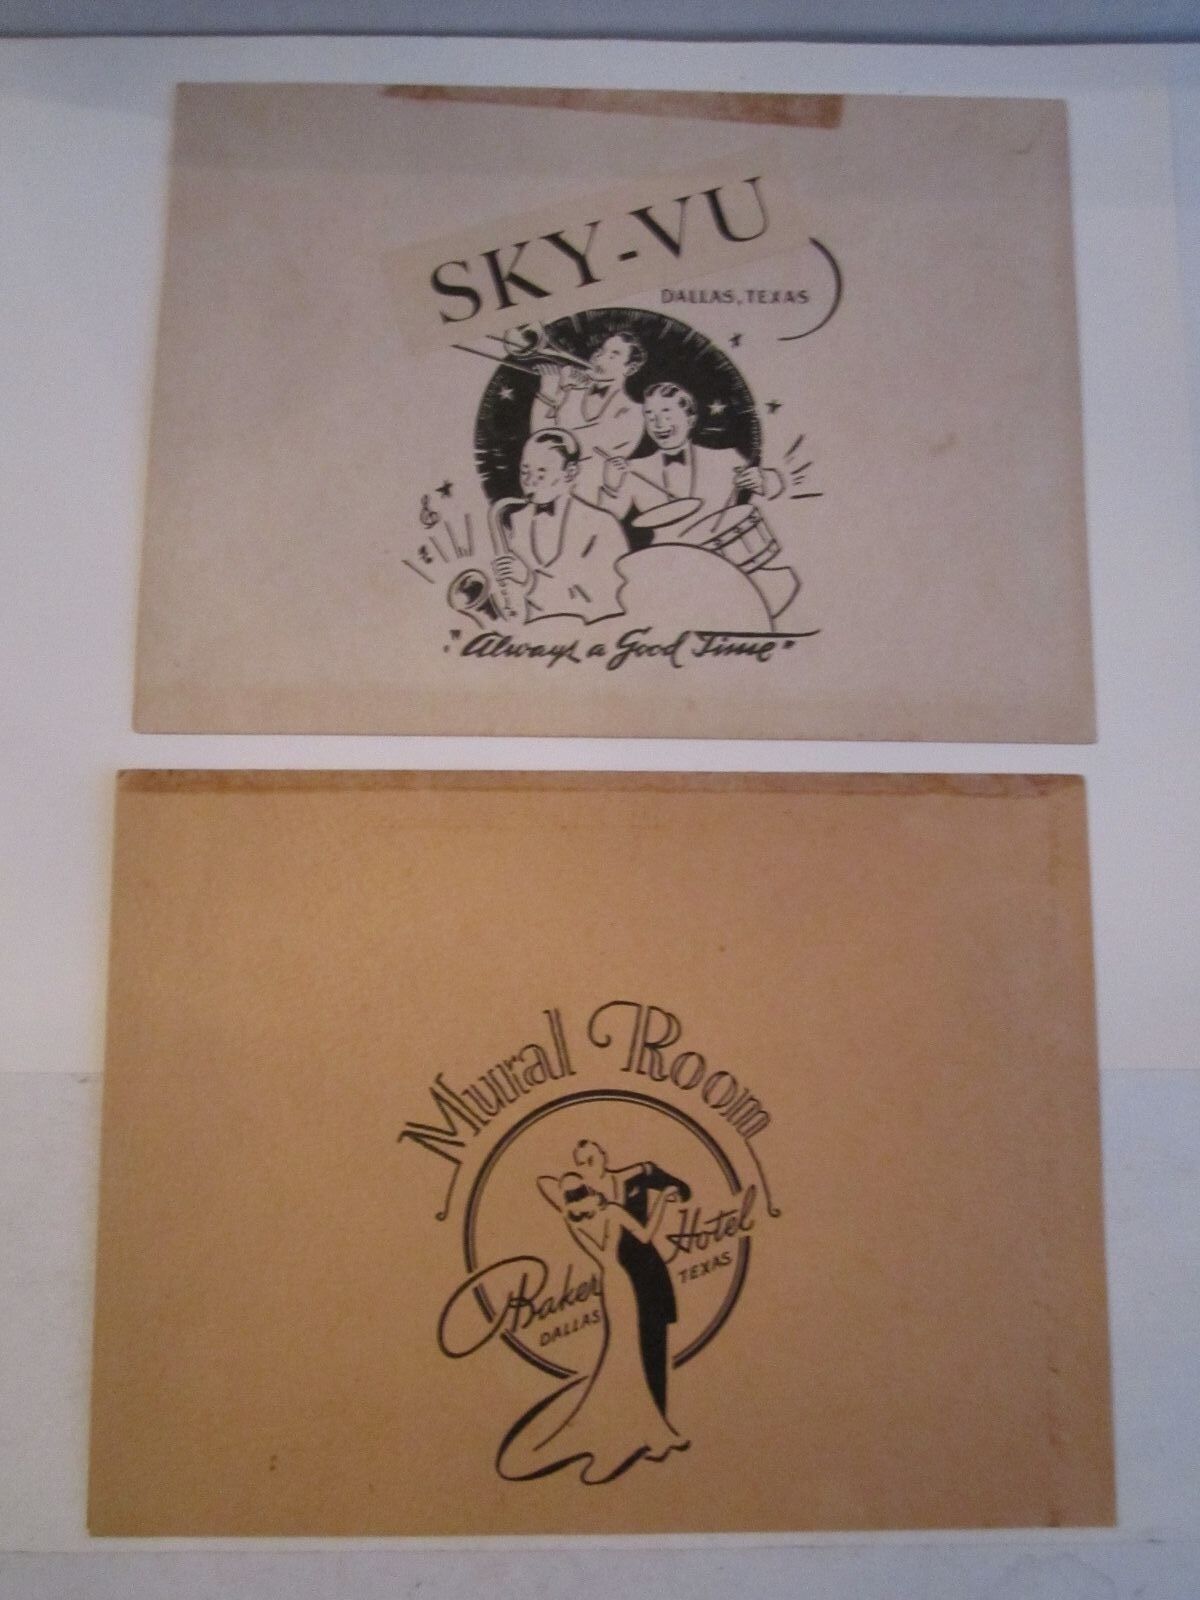 (2) 1940'S DALLAS NIGHT CLUB PHOTO COVERS - MURAL ROOM & SKY-VU CLUB - TUB BMA